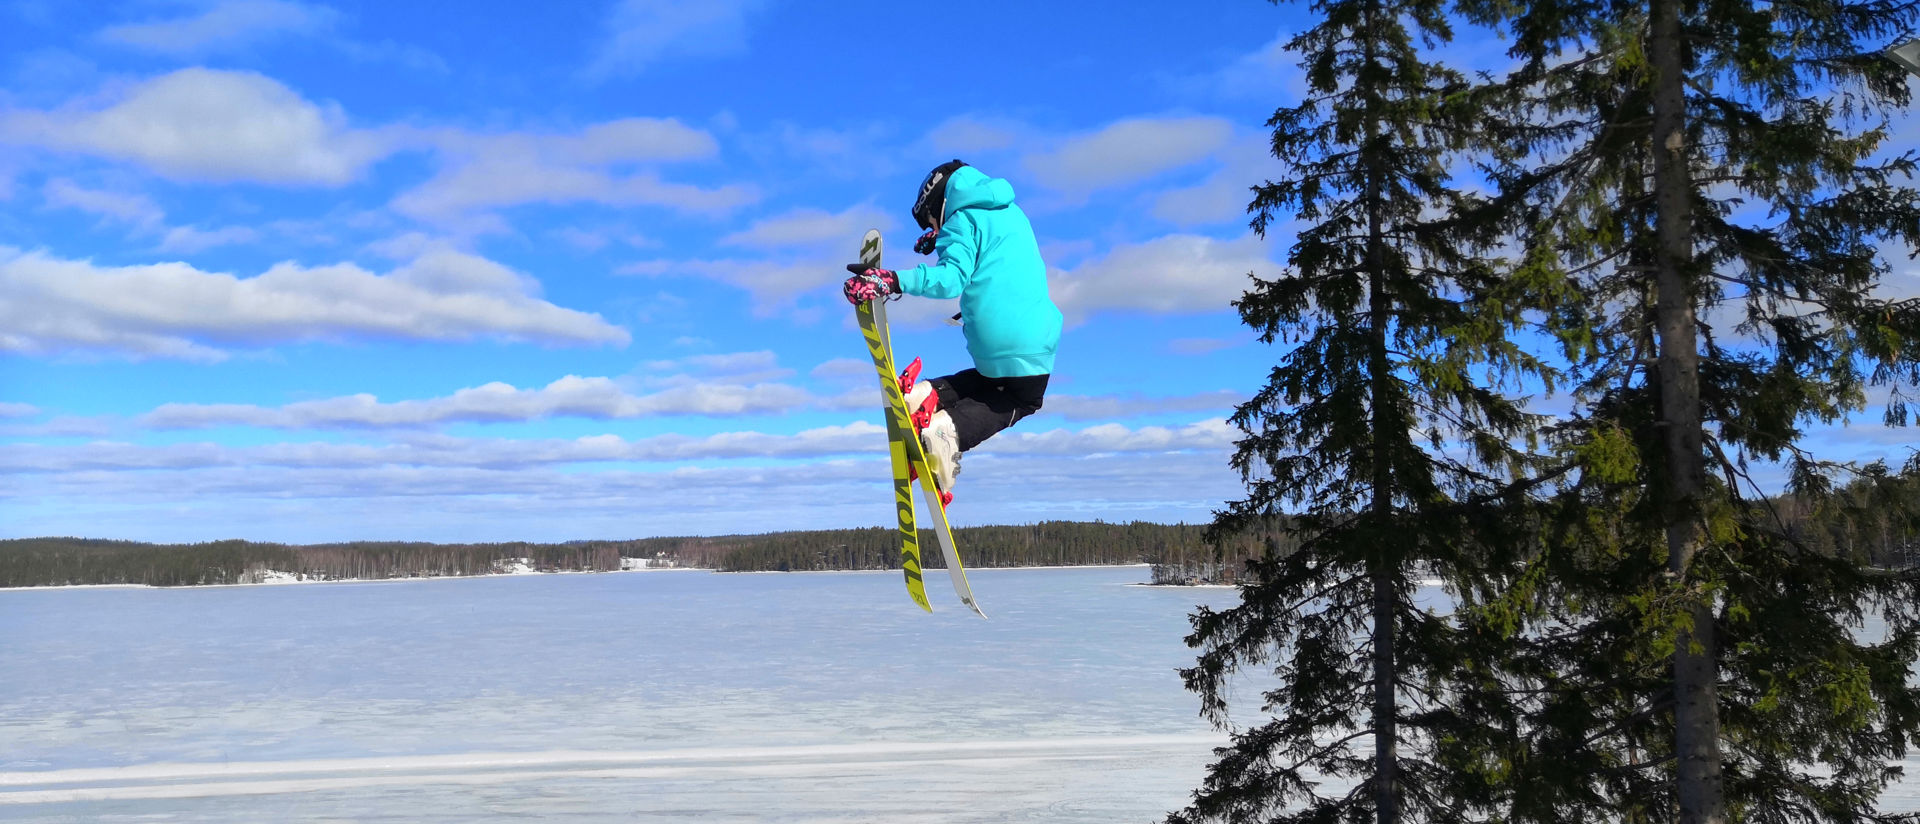 laskettelija hyppää hyppyristä, taustalla luminen järvimaisema